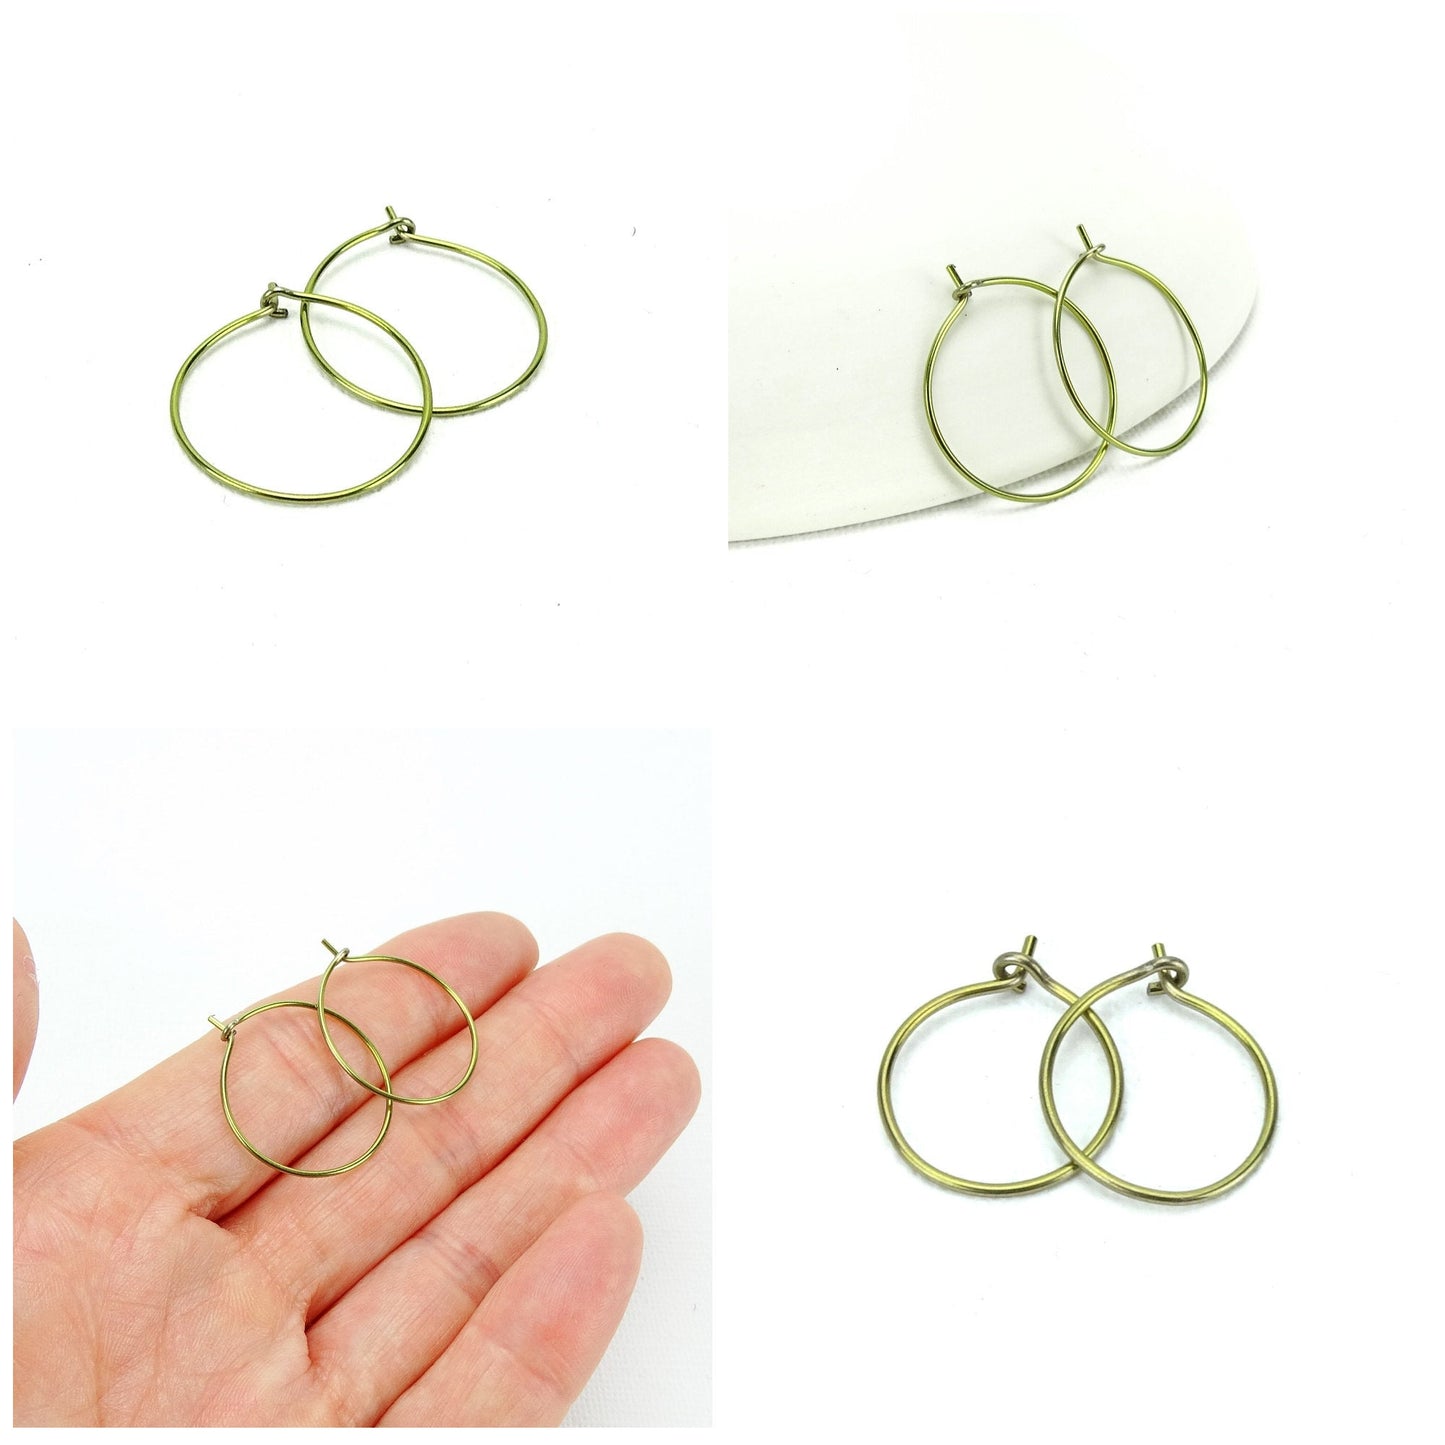 Niobium Medium Gold Hoop Earrings, Yellow Gold Color Niobium Hoops for Sensitive Ears, Nickel Free Hypoallergenic Jewelry